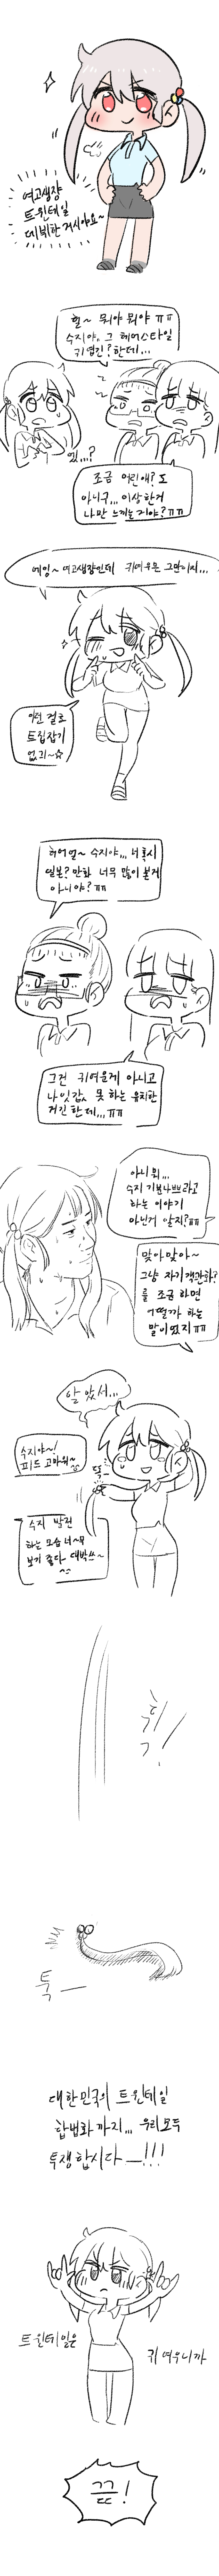 여고생쟝 귀여운 트윈테일 데뷔하는 만화 .jpg